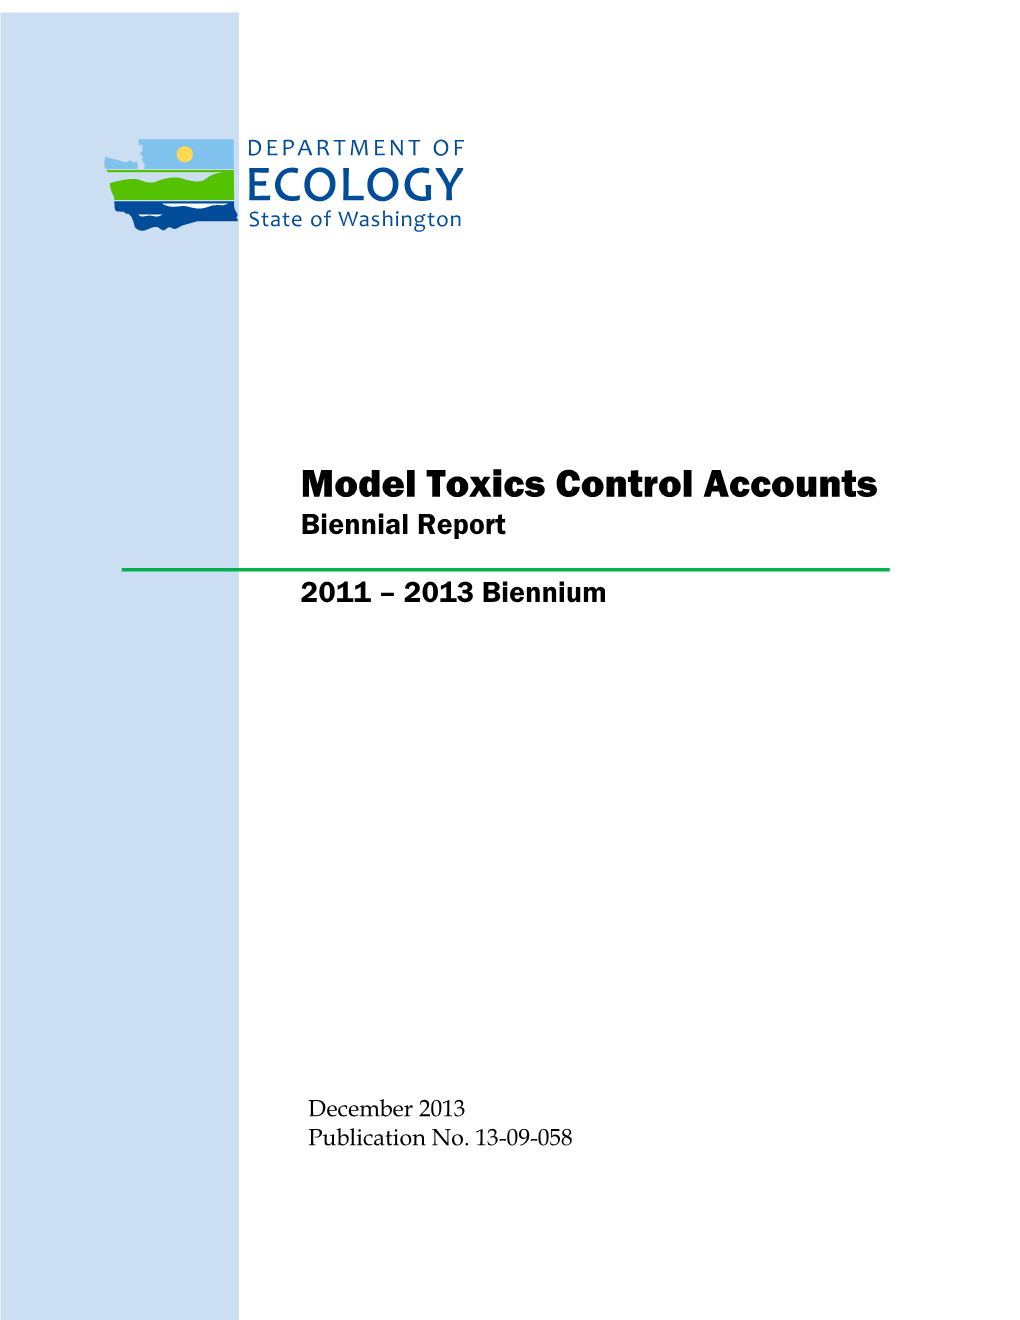 Model Toxics Control Accounts Biennial Report